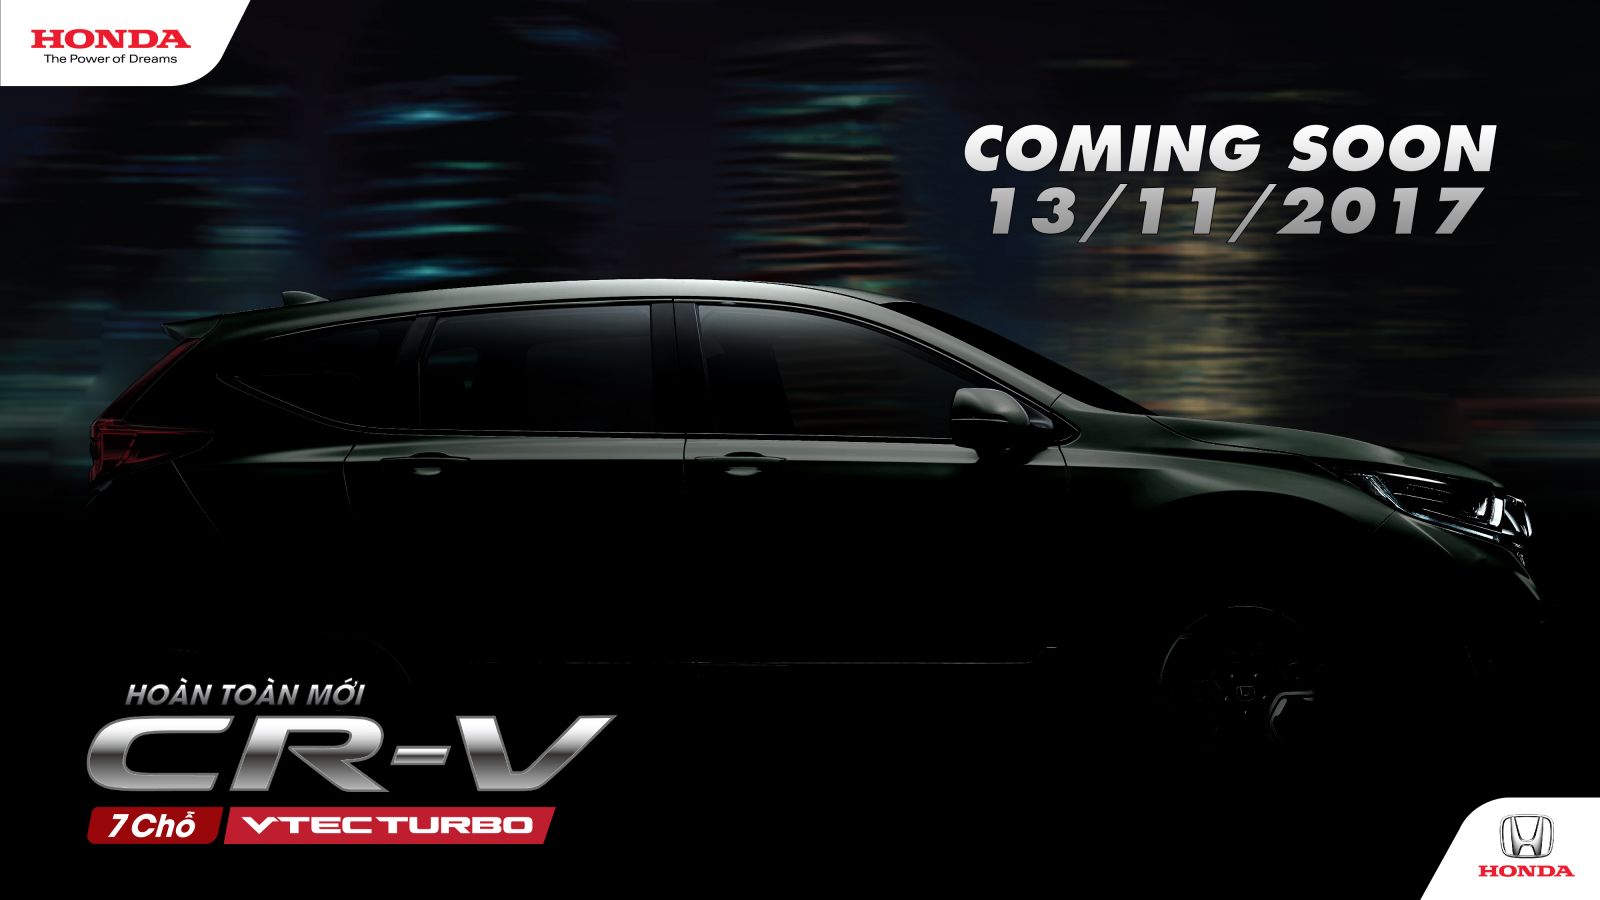 Honda CR-V thế hệ thứ 5 hoàn toàn mới sắp được ra mắt tại Việt Nam